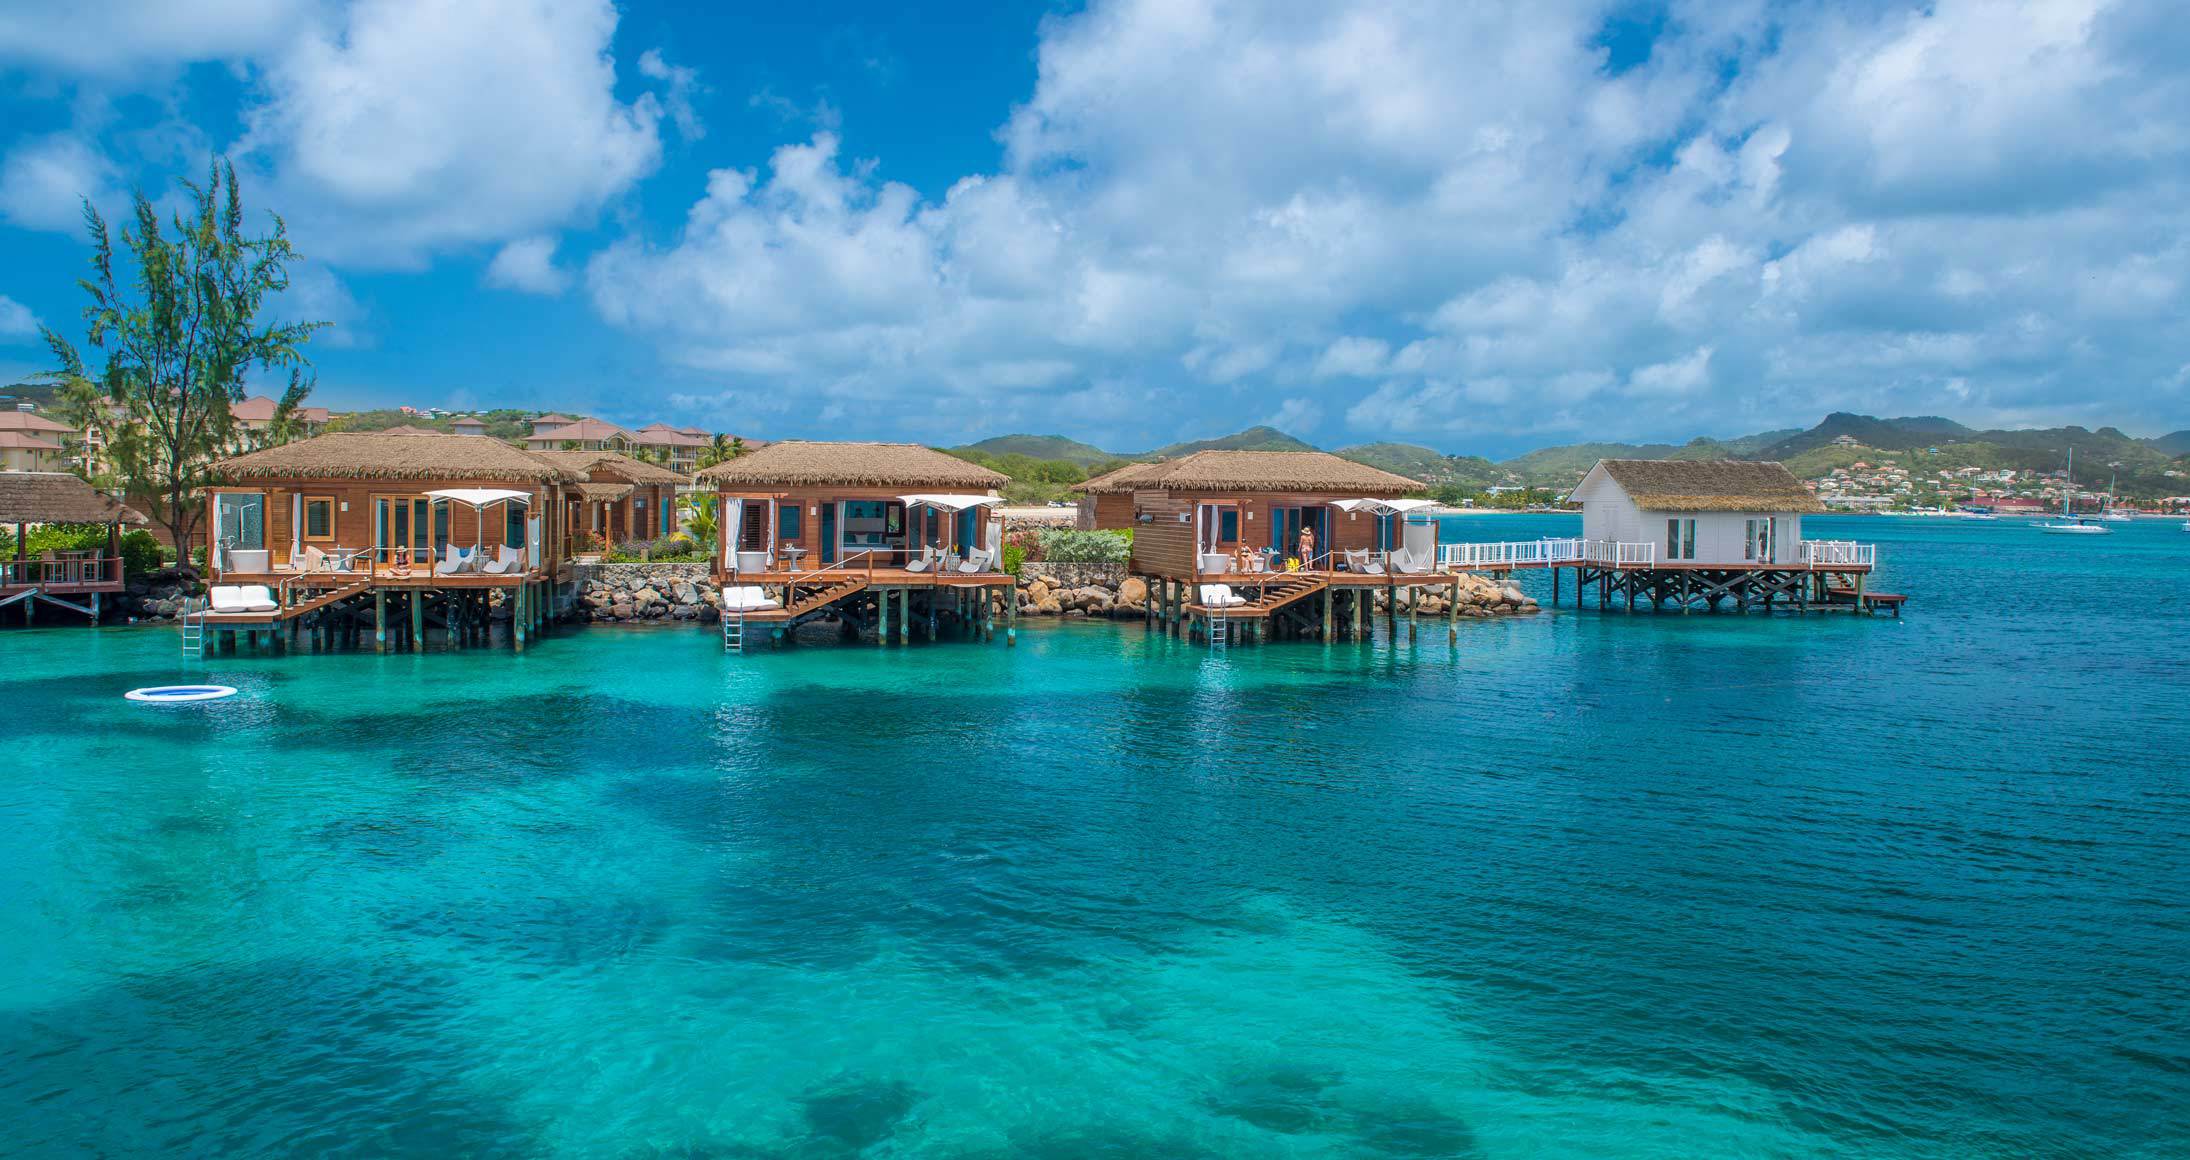 Los mejores bungalows sobre agua en el Caribe | Esta web - 675